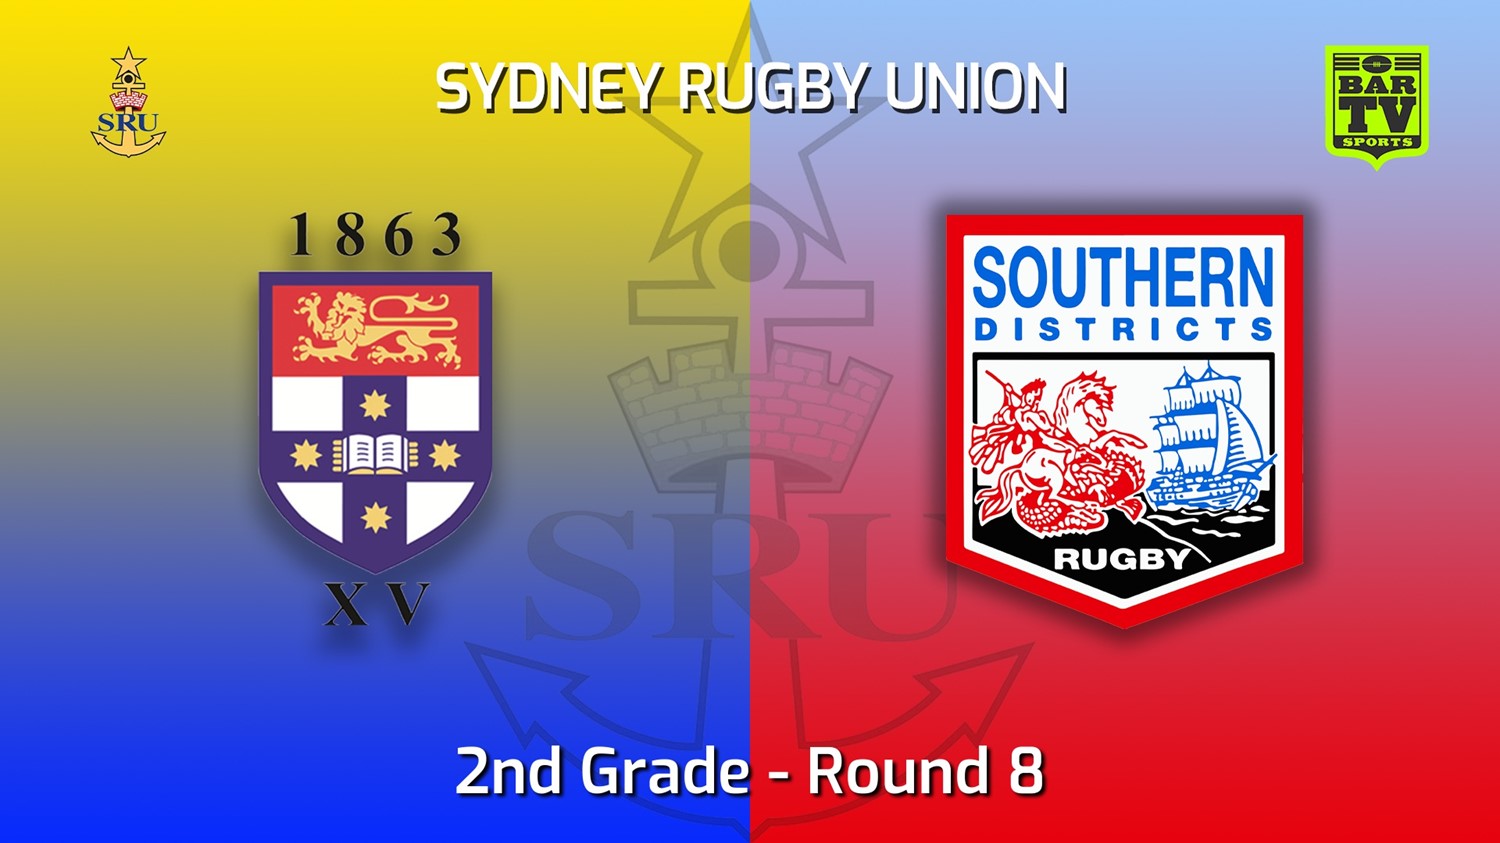 220521-Sydney Rugby Union Round 8 - 2nd Grade - Sydney University v Southern Districts Slate Image